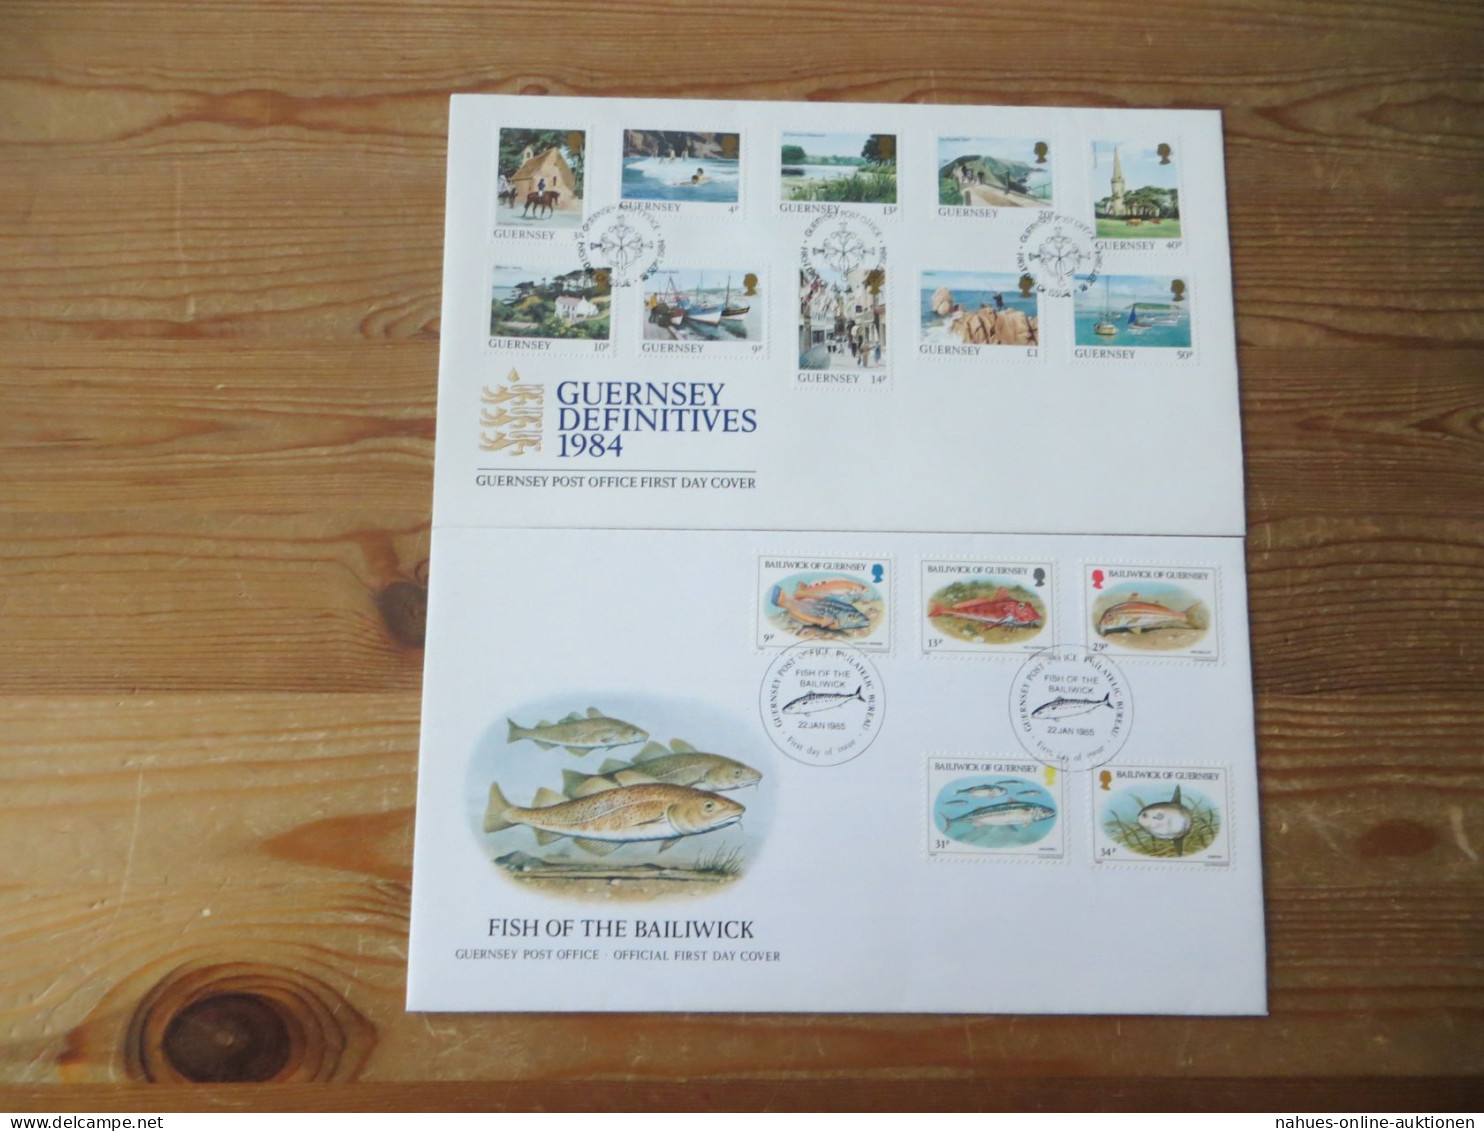 Großbritannien Guernsey Kanalinsel schöne Briefe Sammlung mit Festpreis 60,00